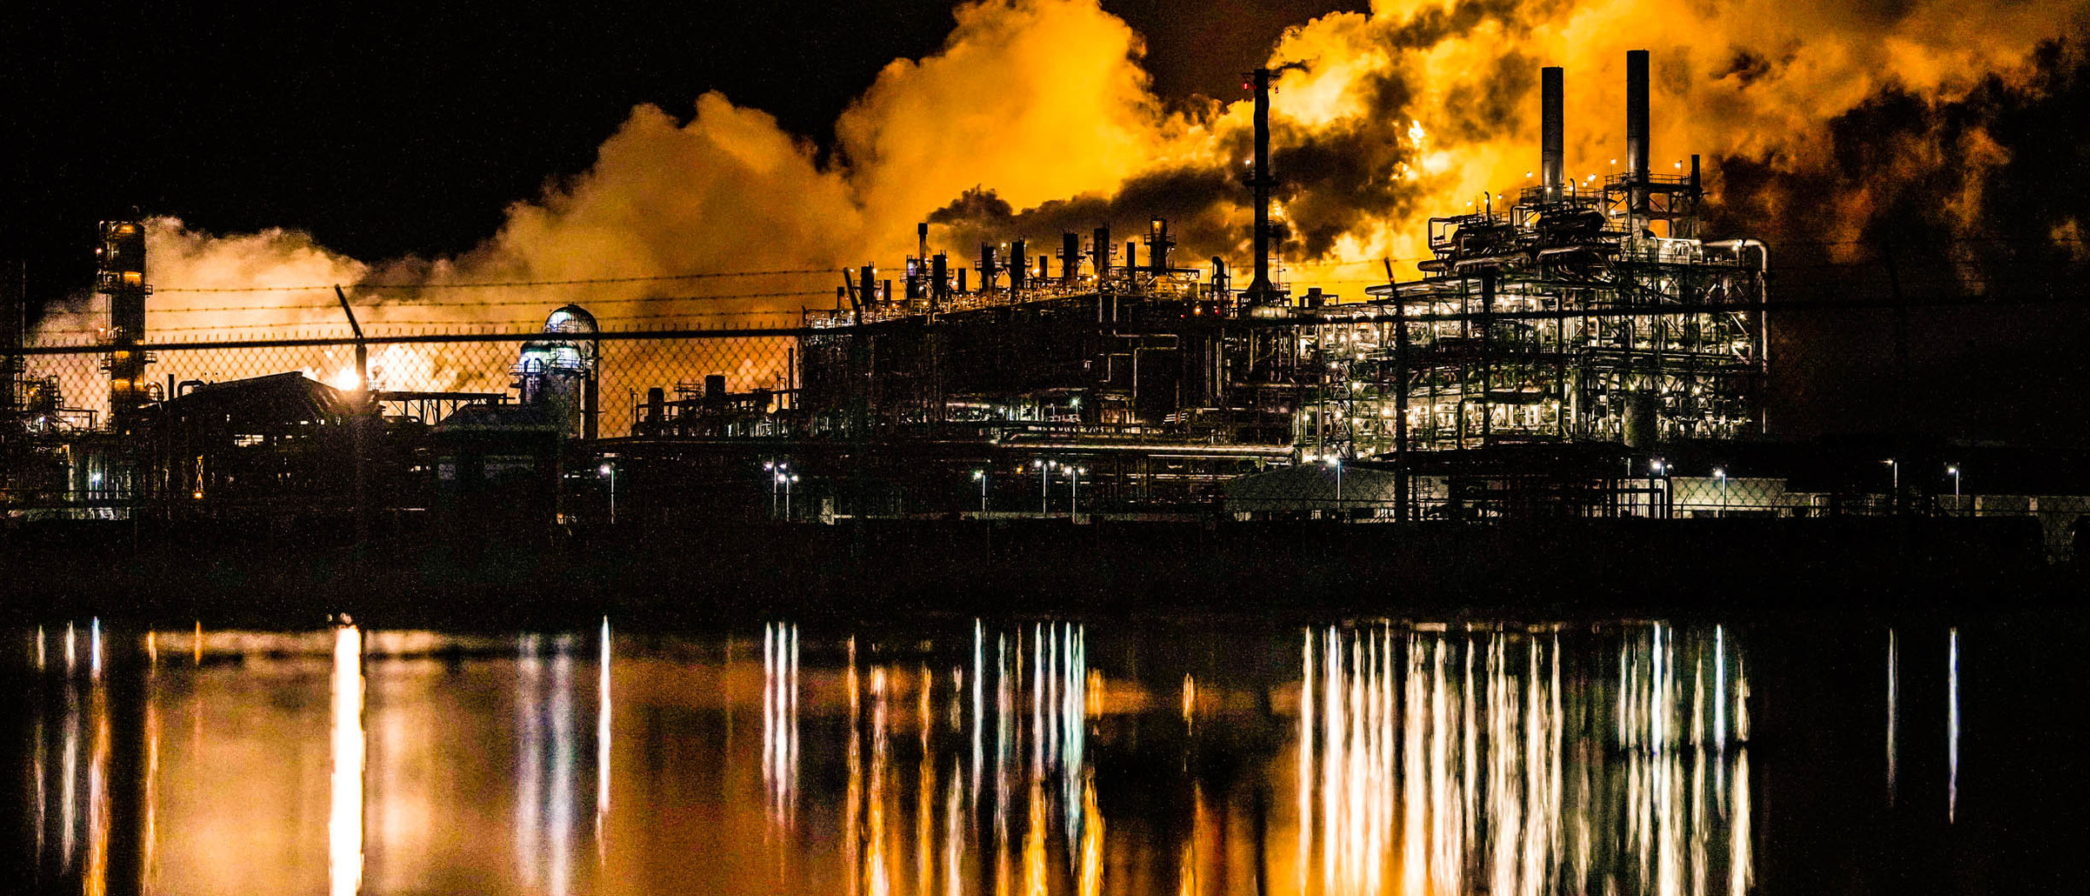 Humo negro y fuego causados por la combustión, o la quema controlada de sustancias, y con frecuencia asociados a emisiones tóxicas y baja calidad del aire, saliendo de una planta cerca del Canal de Navegación de Houston de noche en 2023.